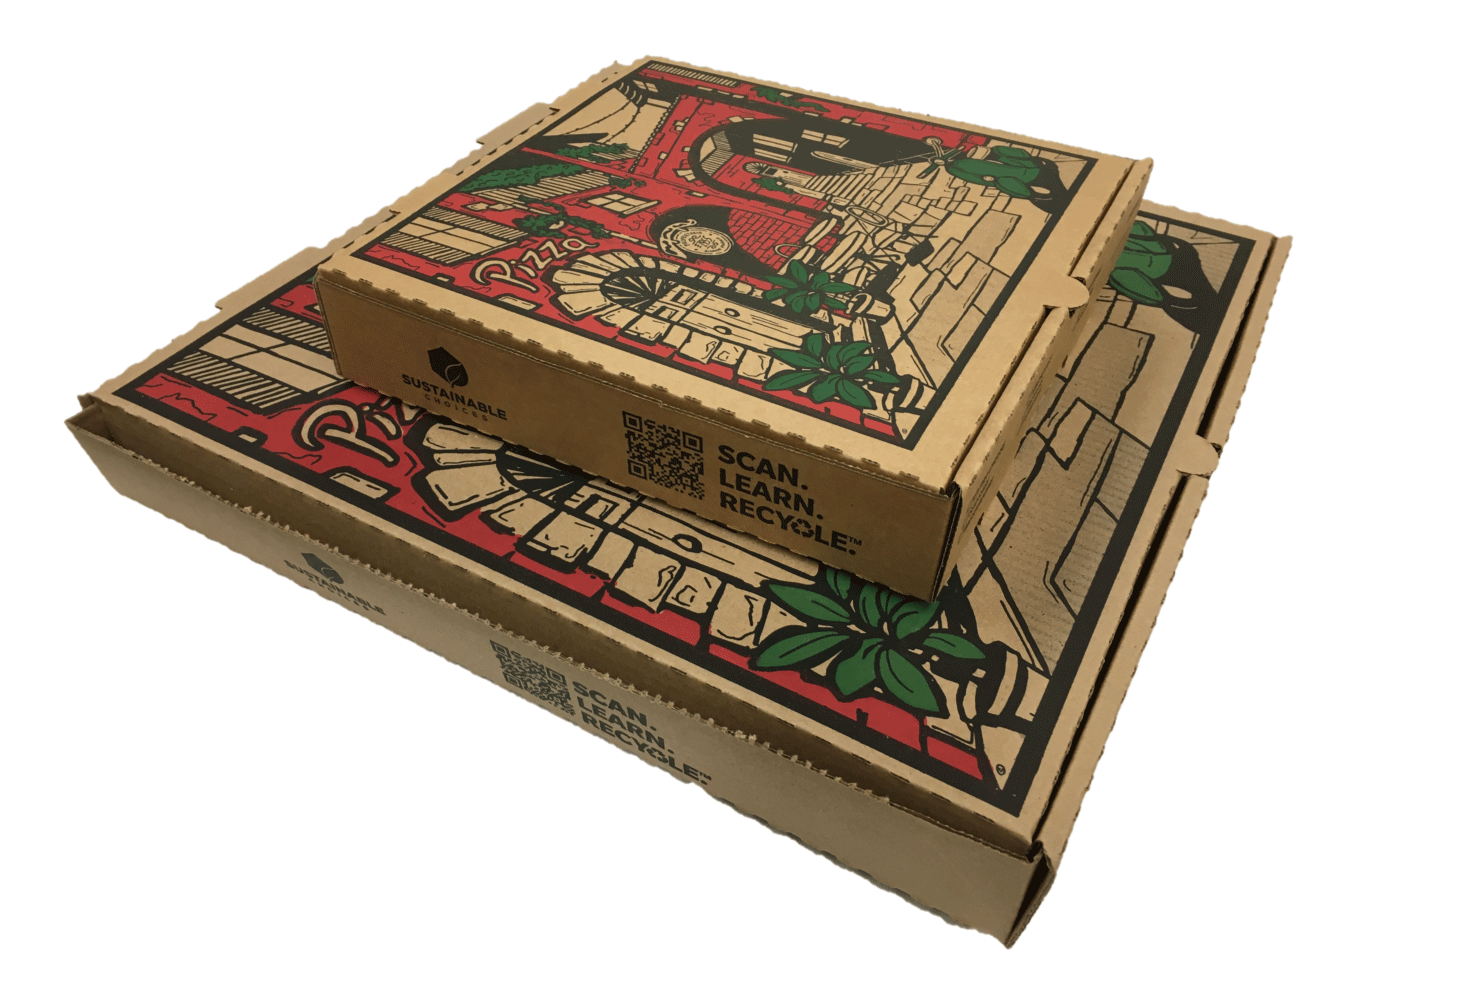 Pizza Box Art Competition – Stefanis Pizzeria